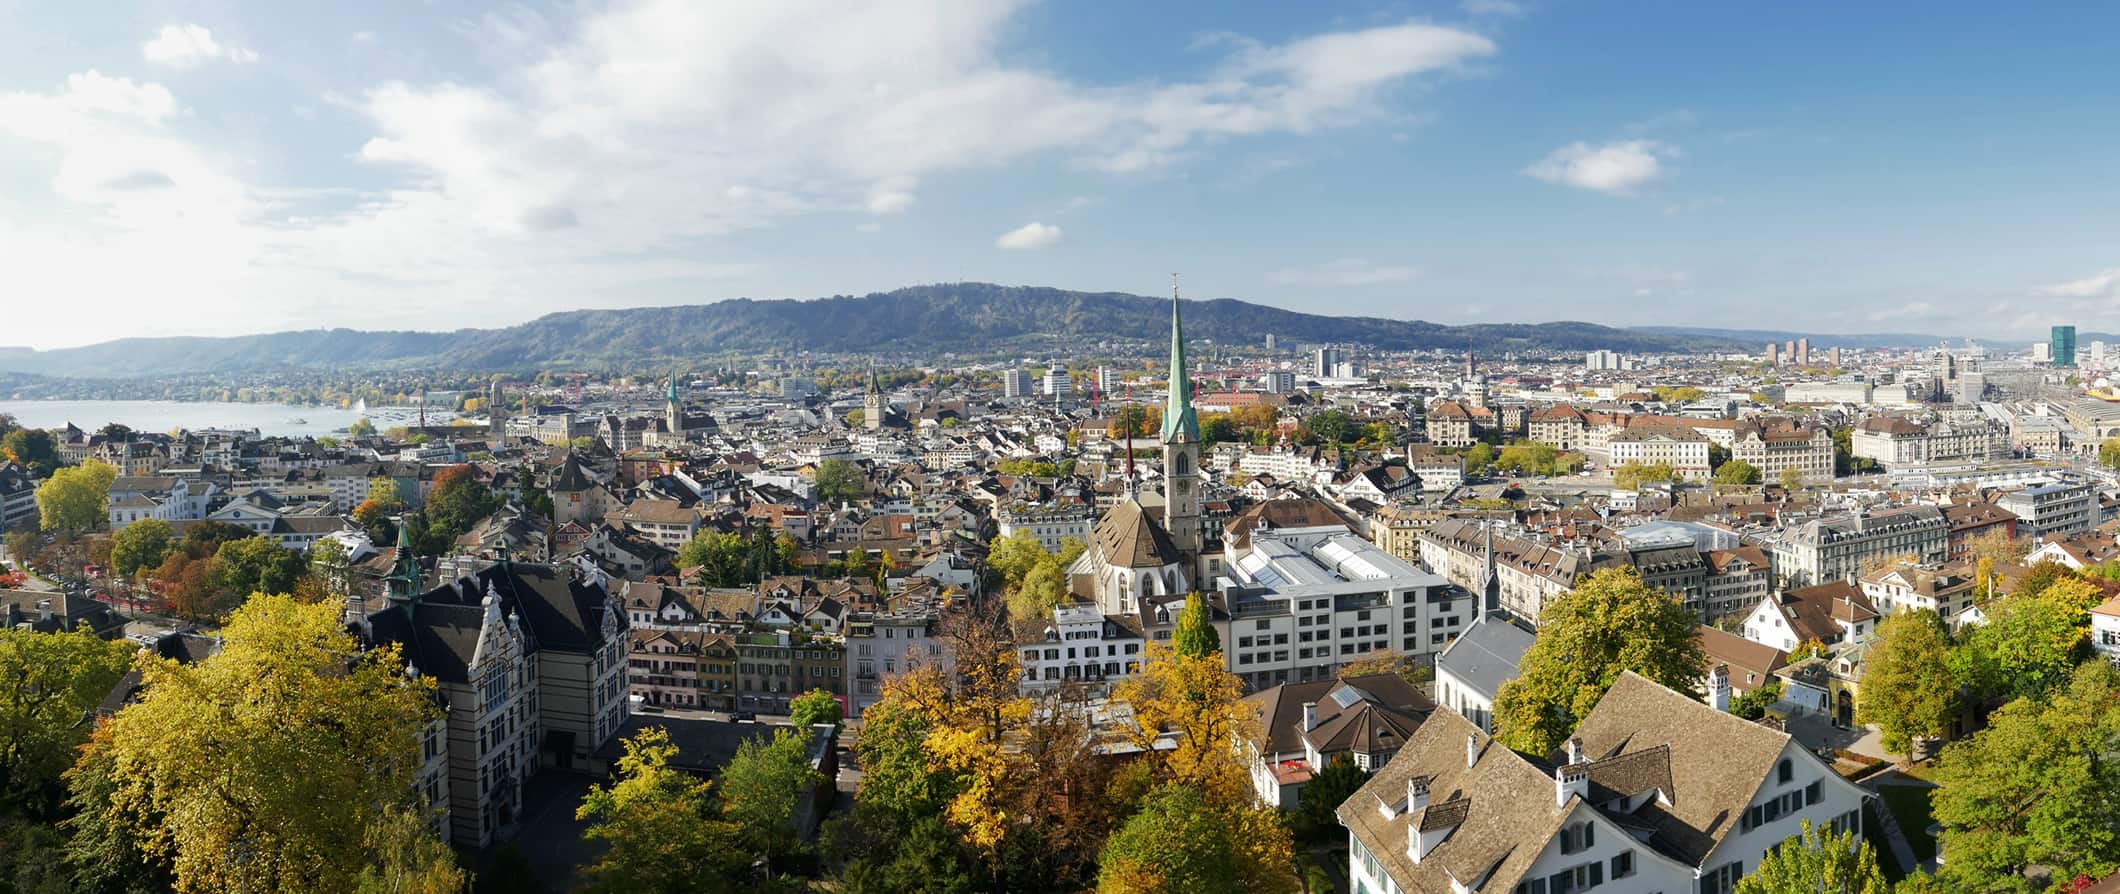 Zurich Budget Travel Guide (Updated )